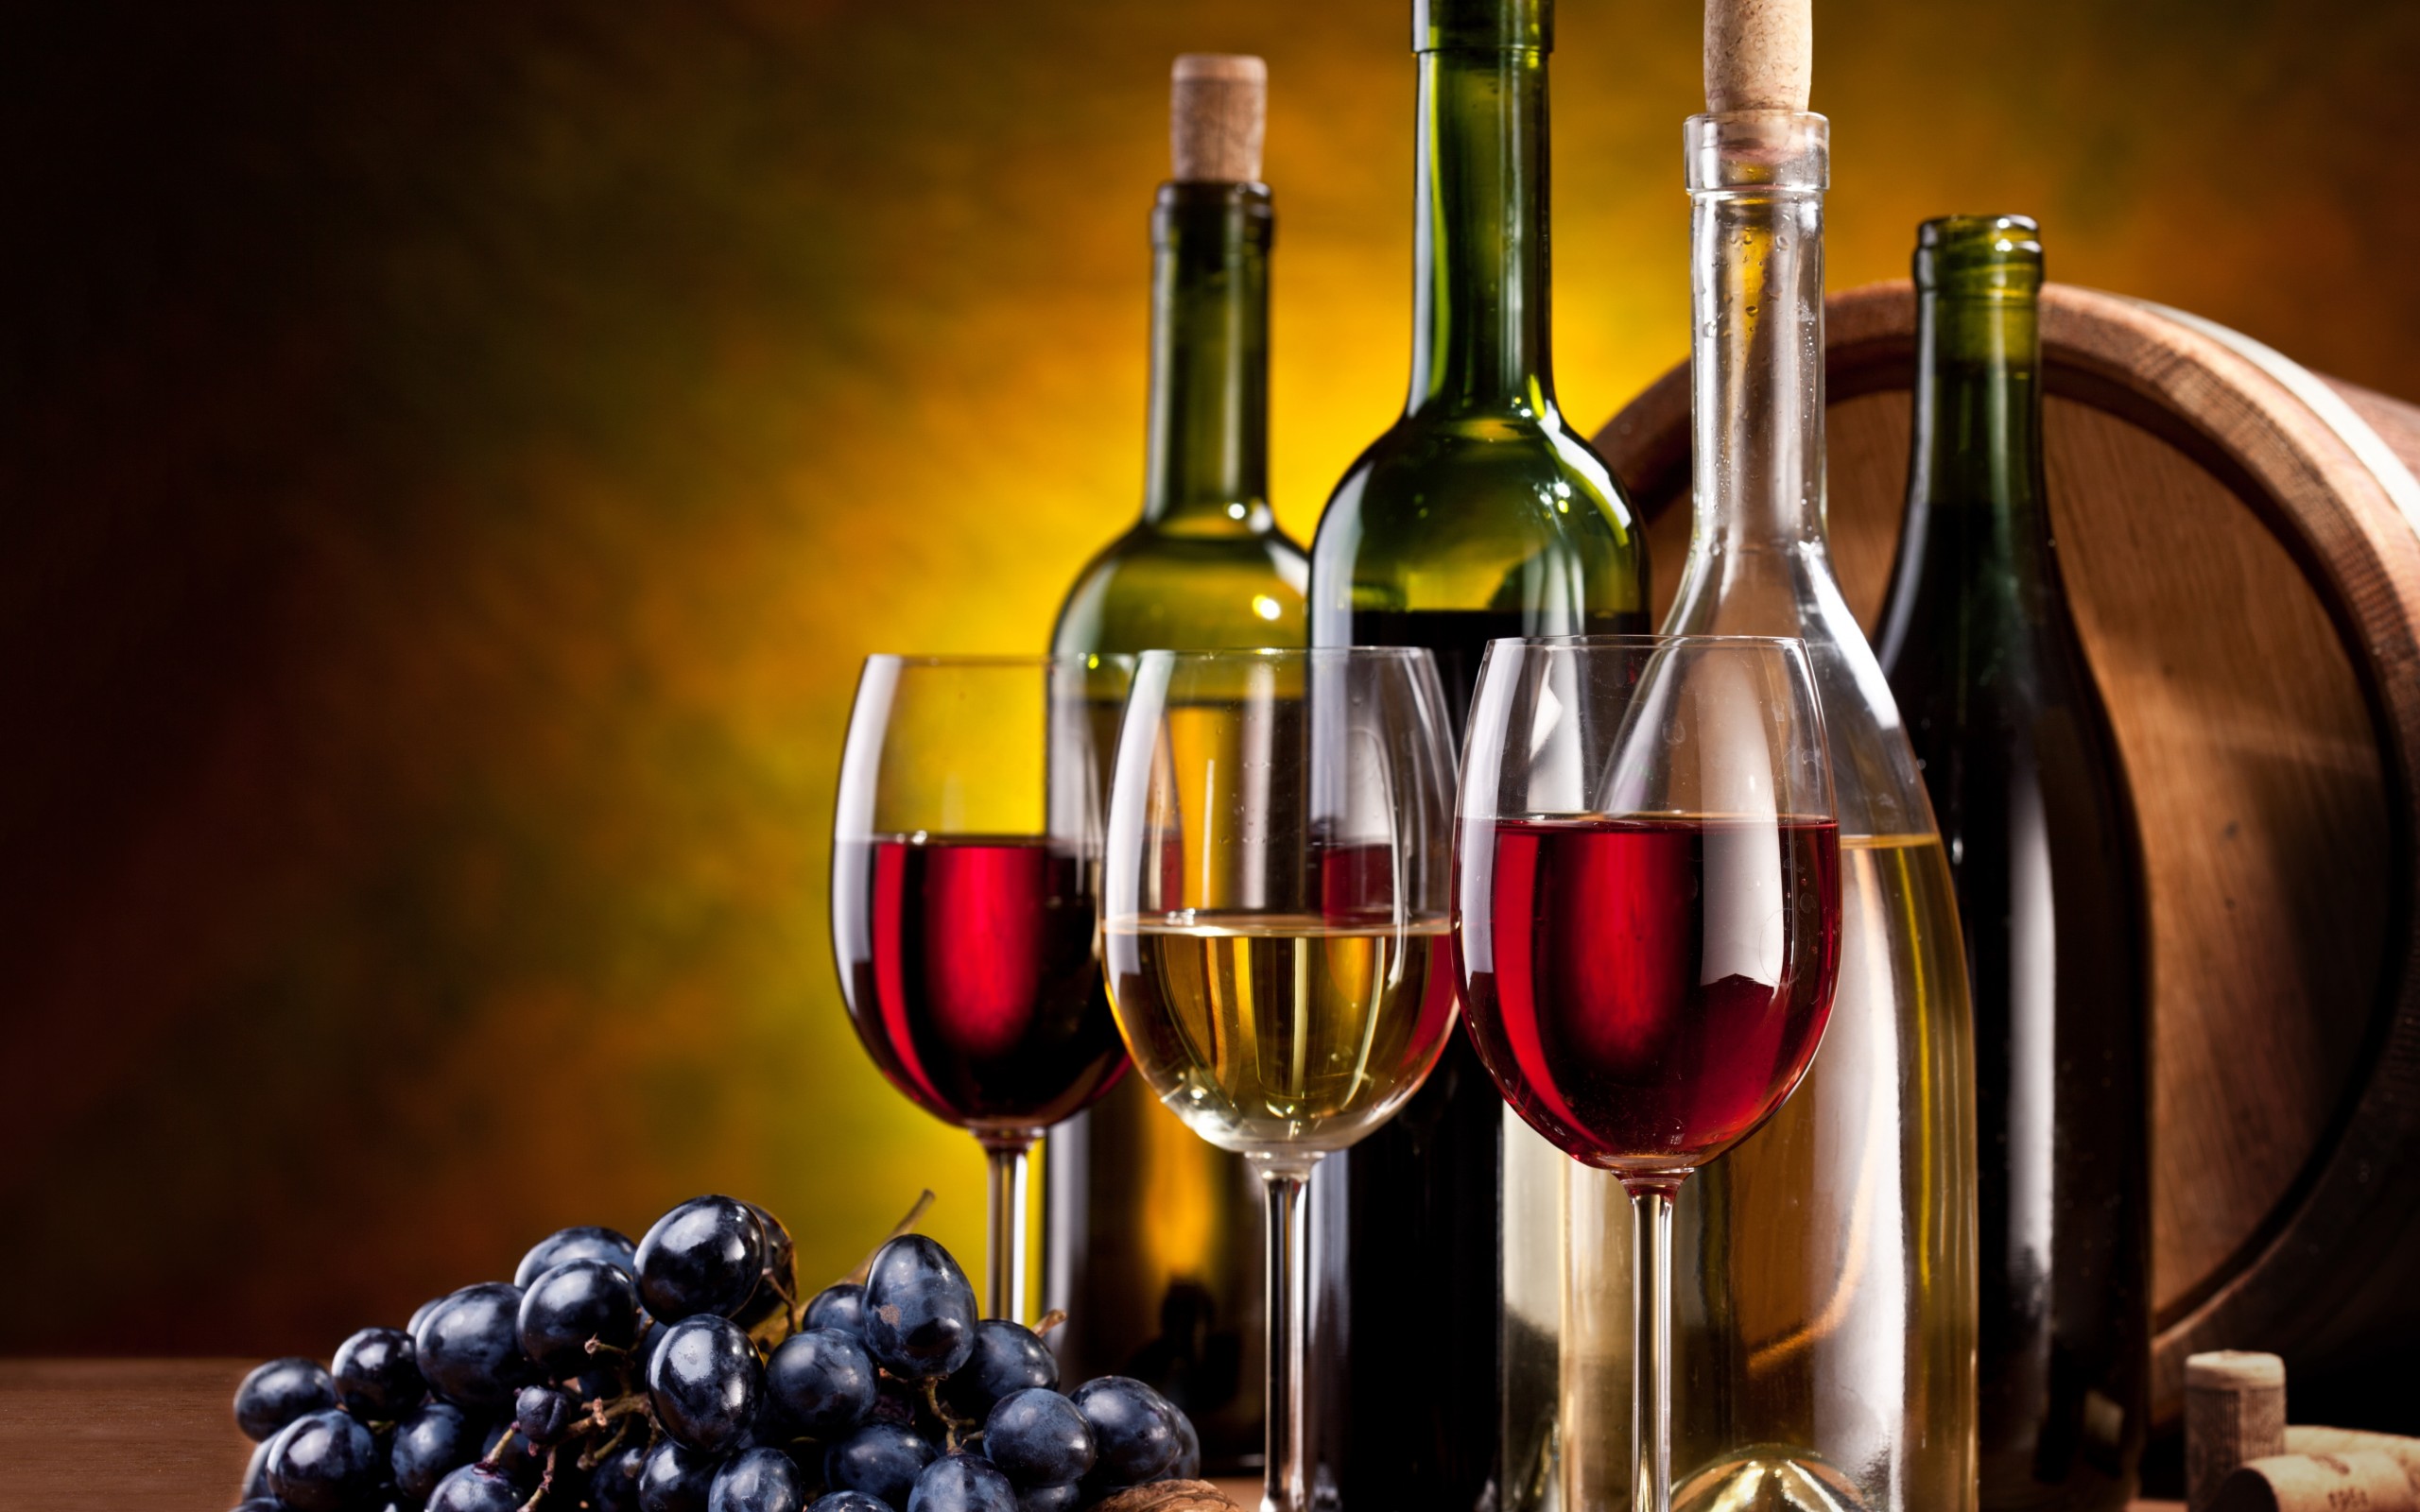 Chính phủ vừa ban hành Nghị định 105/2017/NĐ-CP quy định về kinh doanh rượu